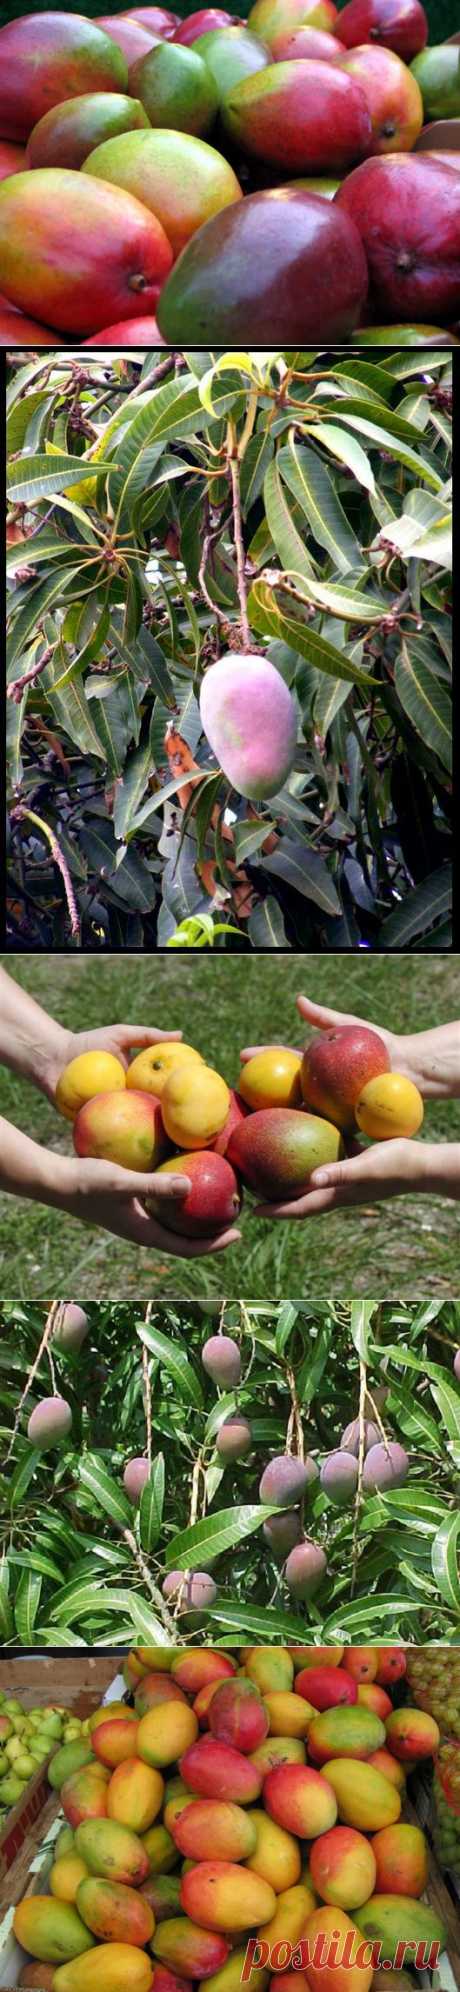 Израильские полезности.Манго - король тропических фруктов